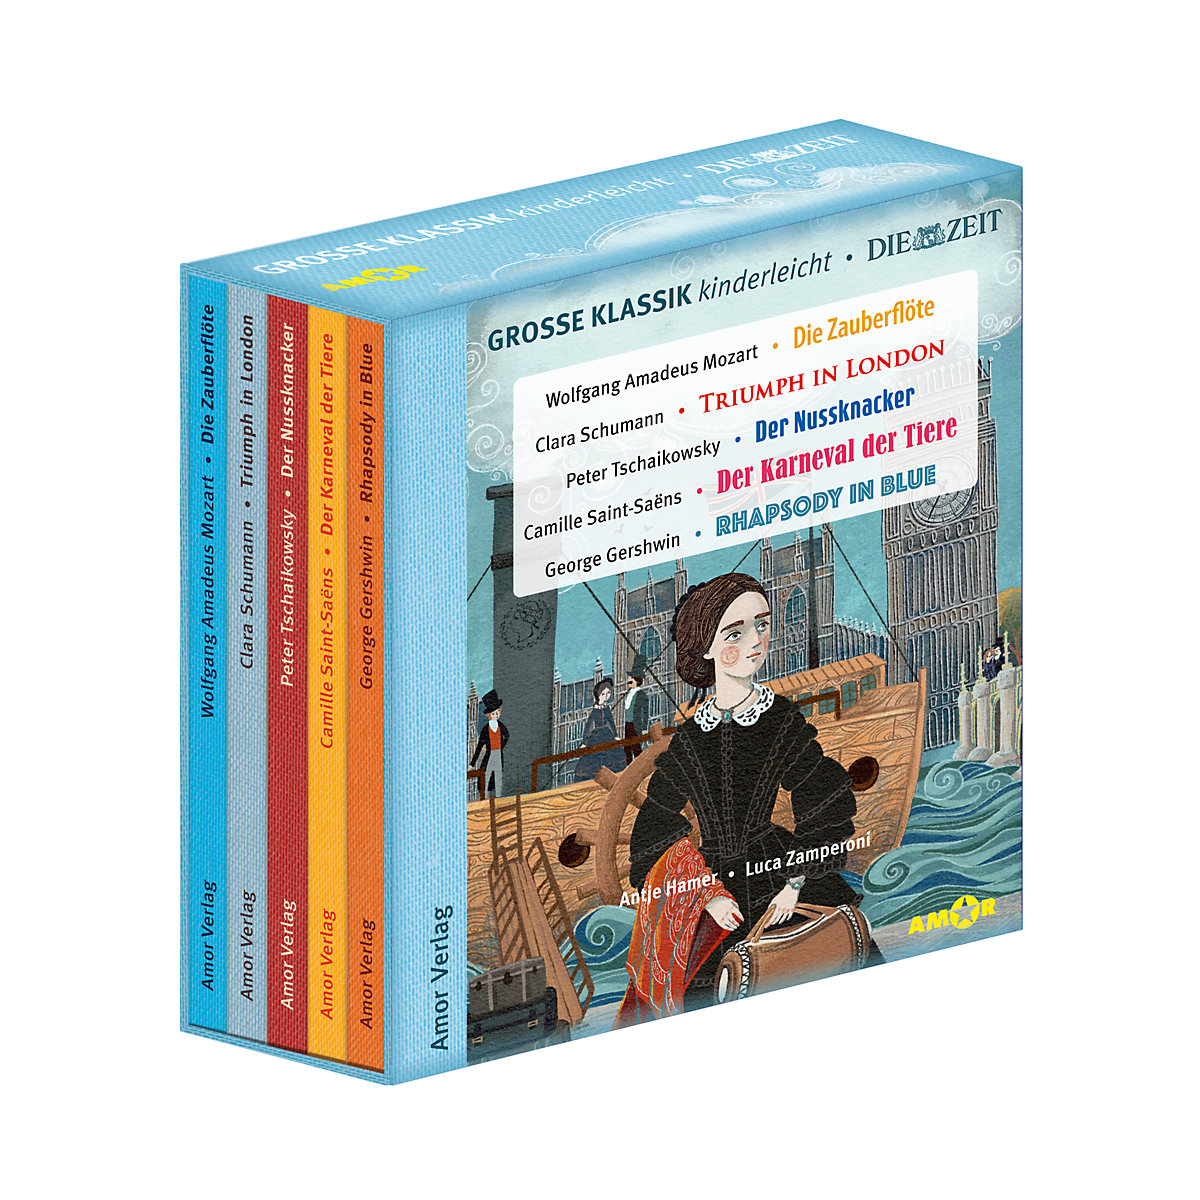 Große Klassik kinderleicht. DIE ZEIT-Edition. (5 CDs Lesungen mit Musik) 5 Audio-CD